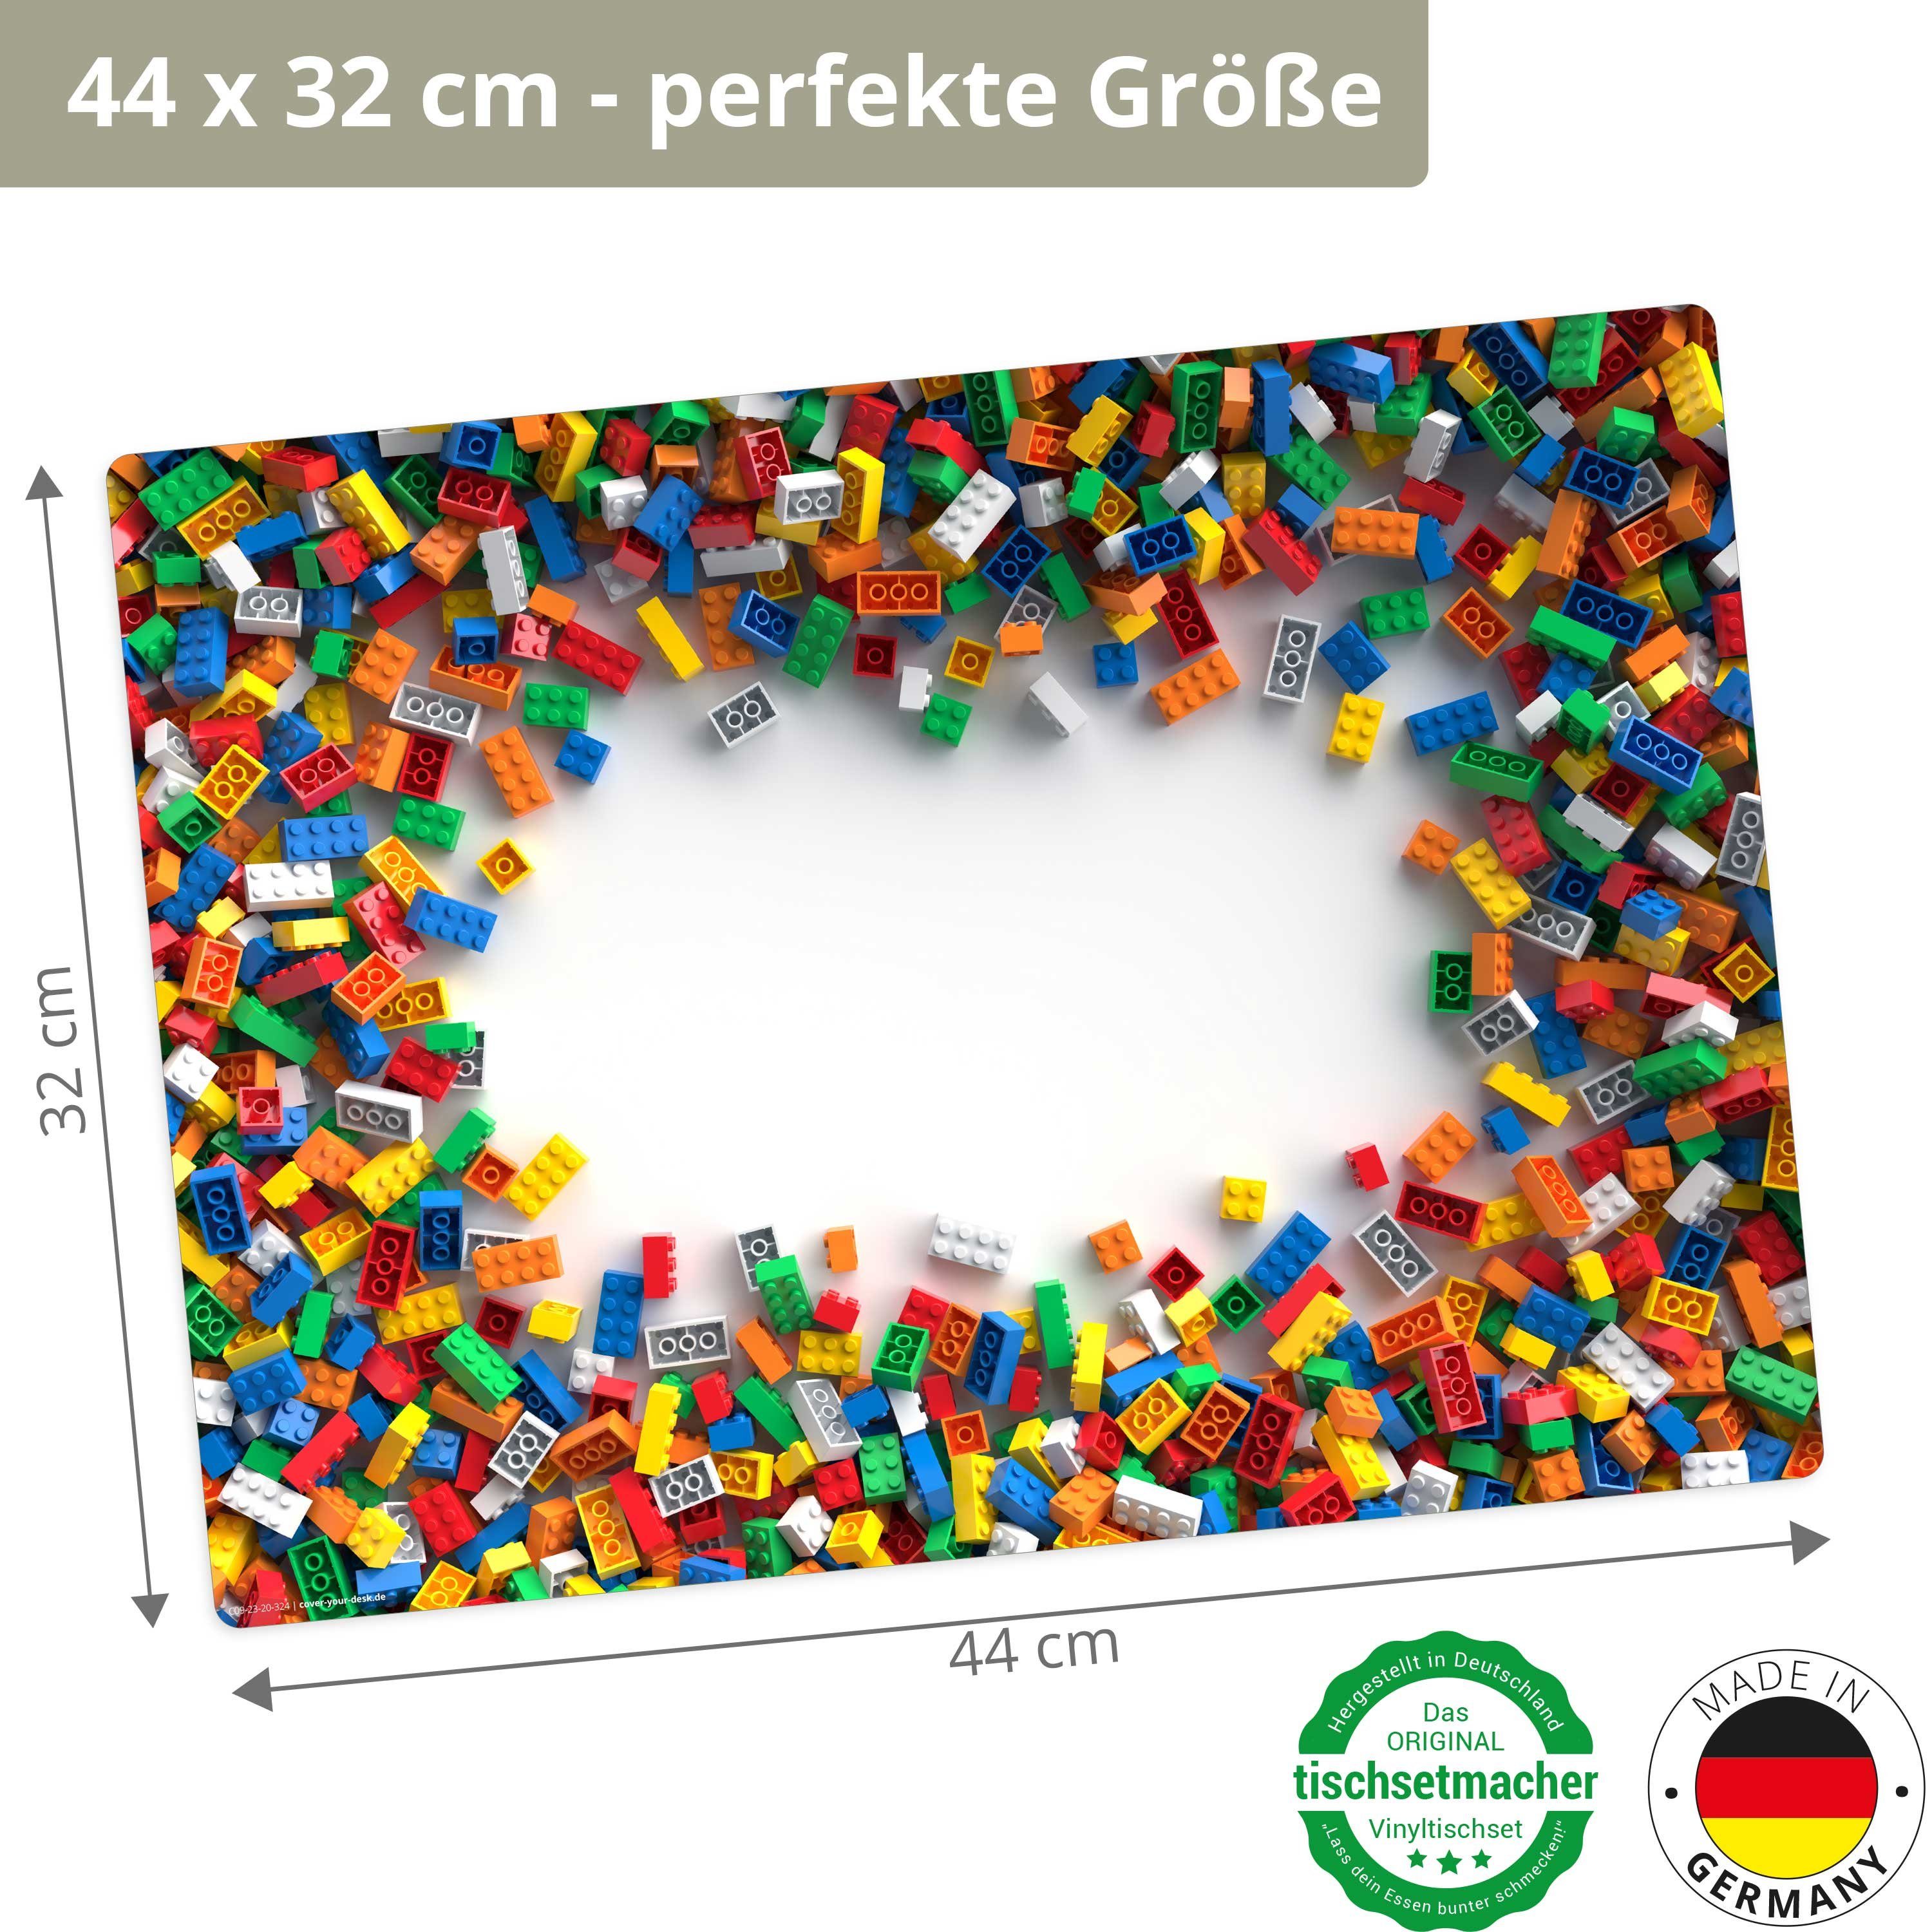 Platzset, Tischset, Vinyl, Germany cm (aus abwaschbar 44  Platzset Tischsetmacher, 32 / erstklassigem 1-St., x - Made Legoteile, in bunt)